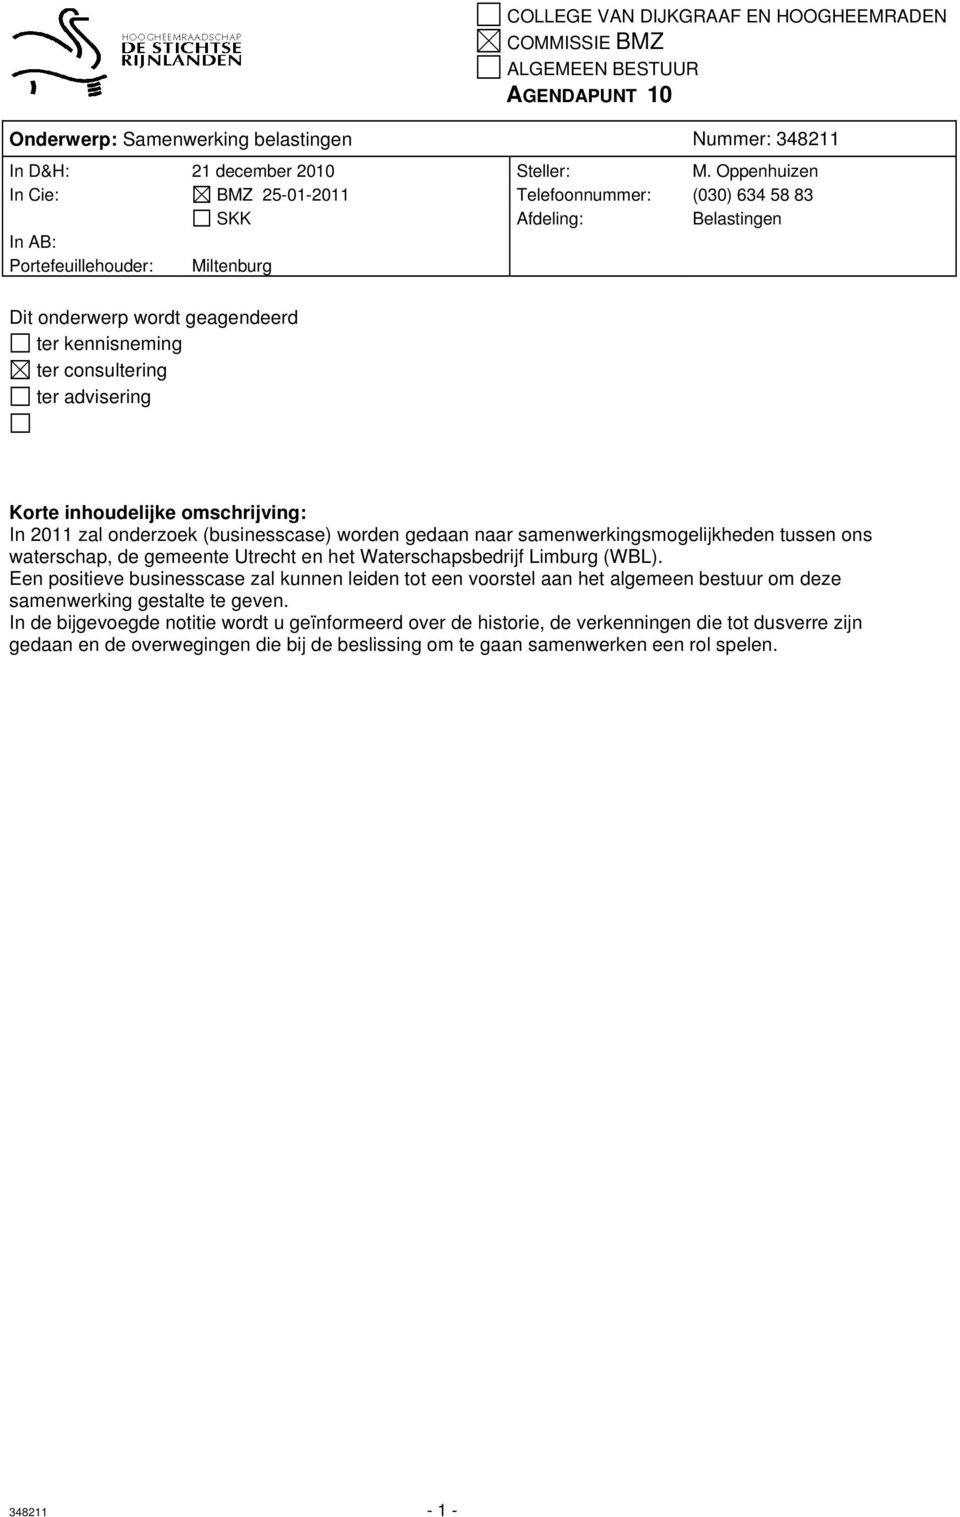 ter advisering Korte inhoudelijke omschrijving: In 2011 zal onderzoek (businesscase) worden gedaan naar samenwerkingsmogelijkheden tussen ons waterschap, de gemeente Utrecht en het Waterschapsbedrijf